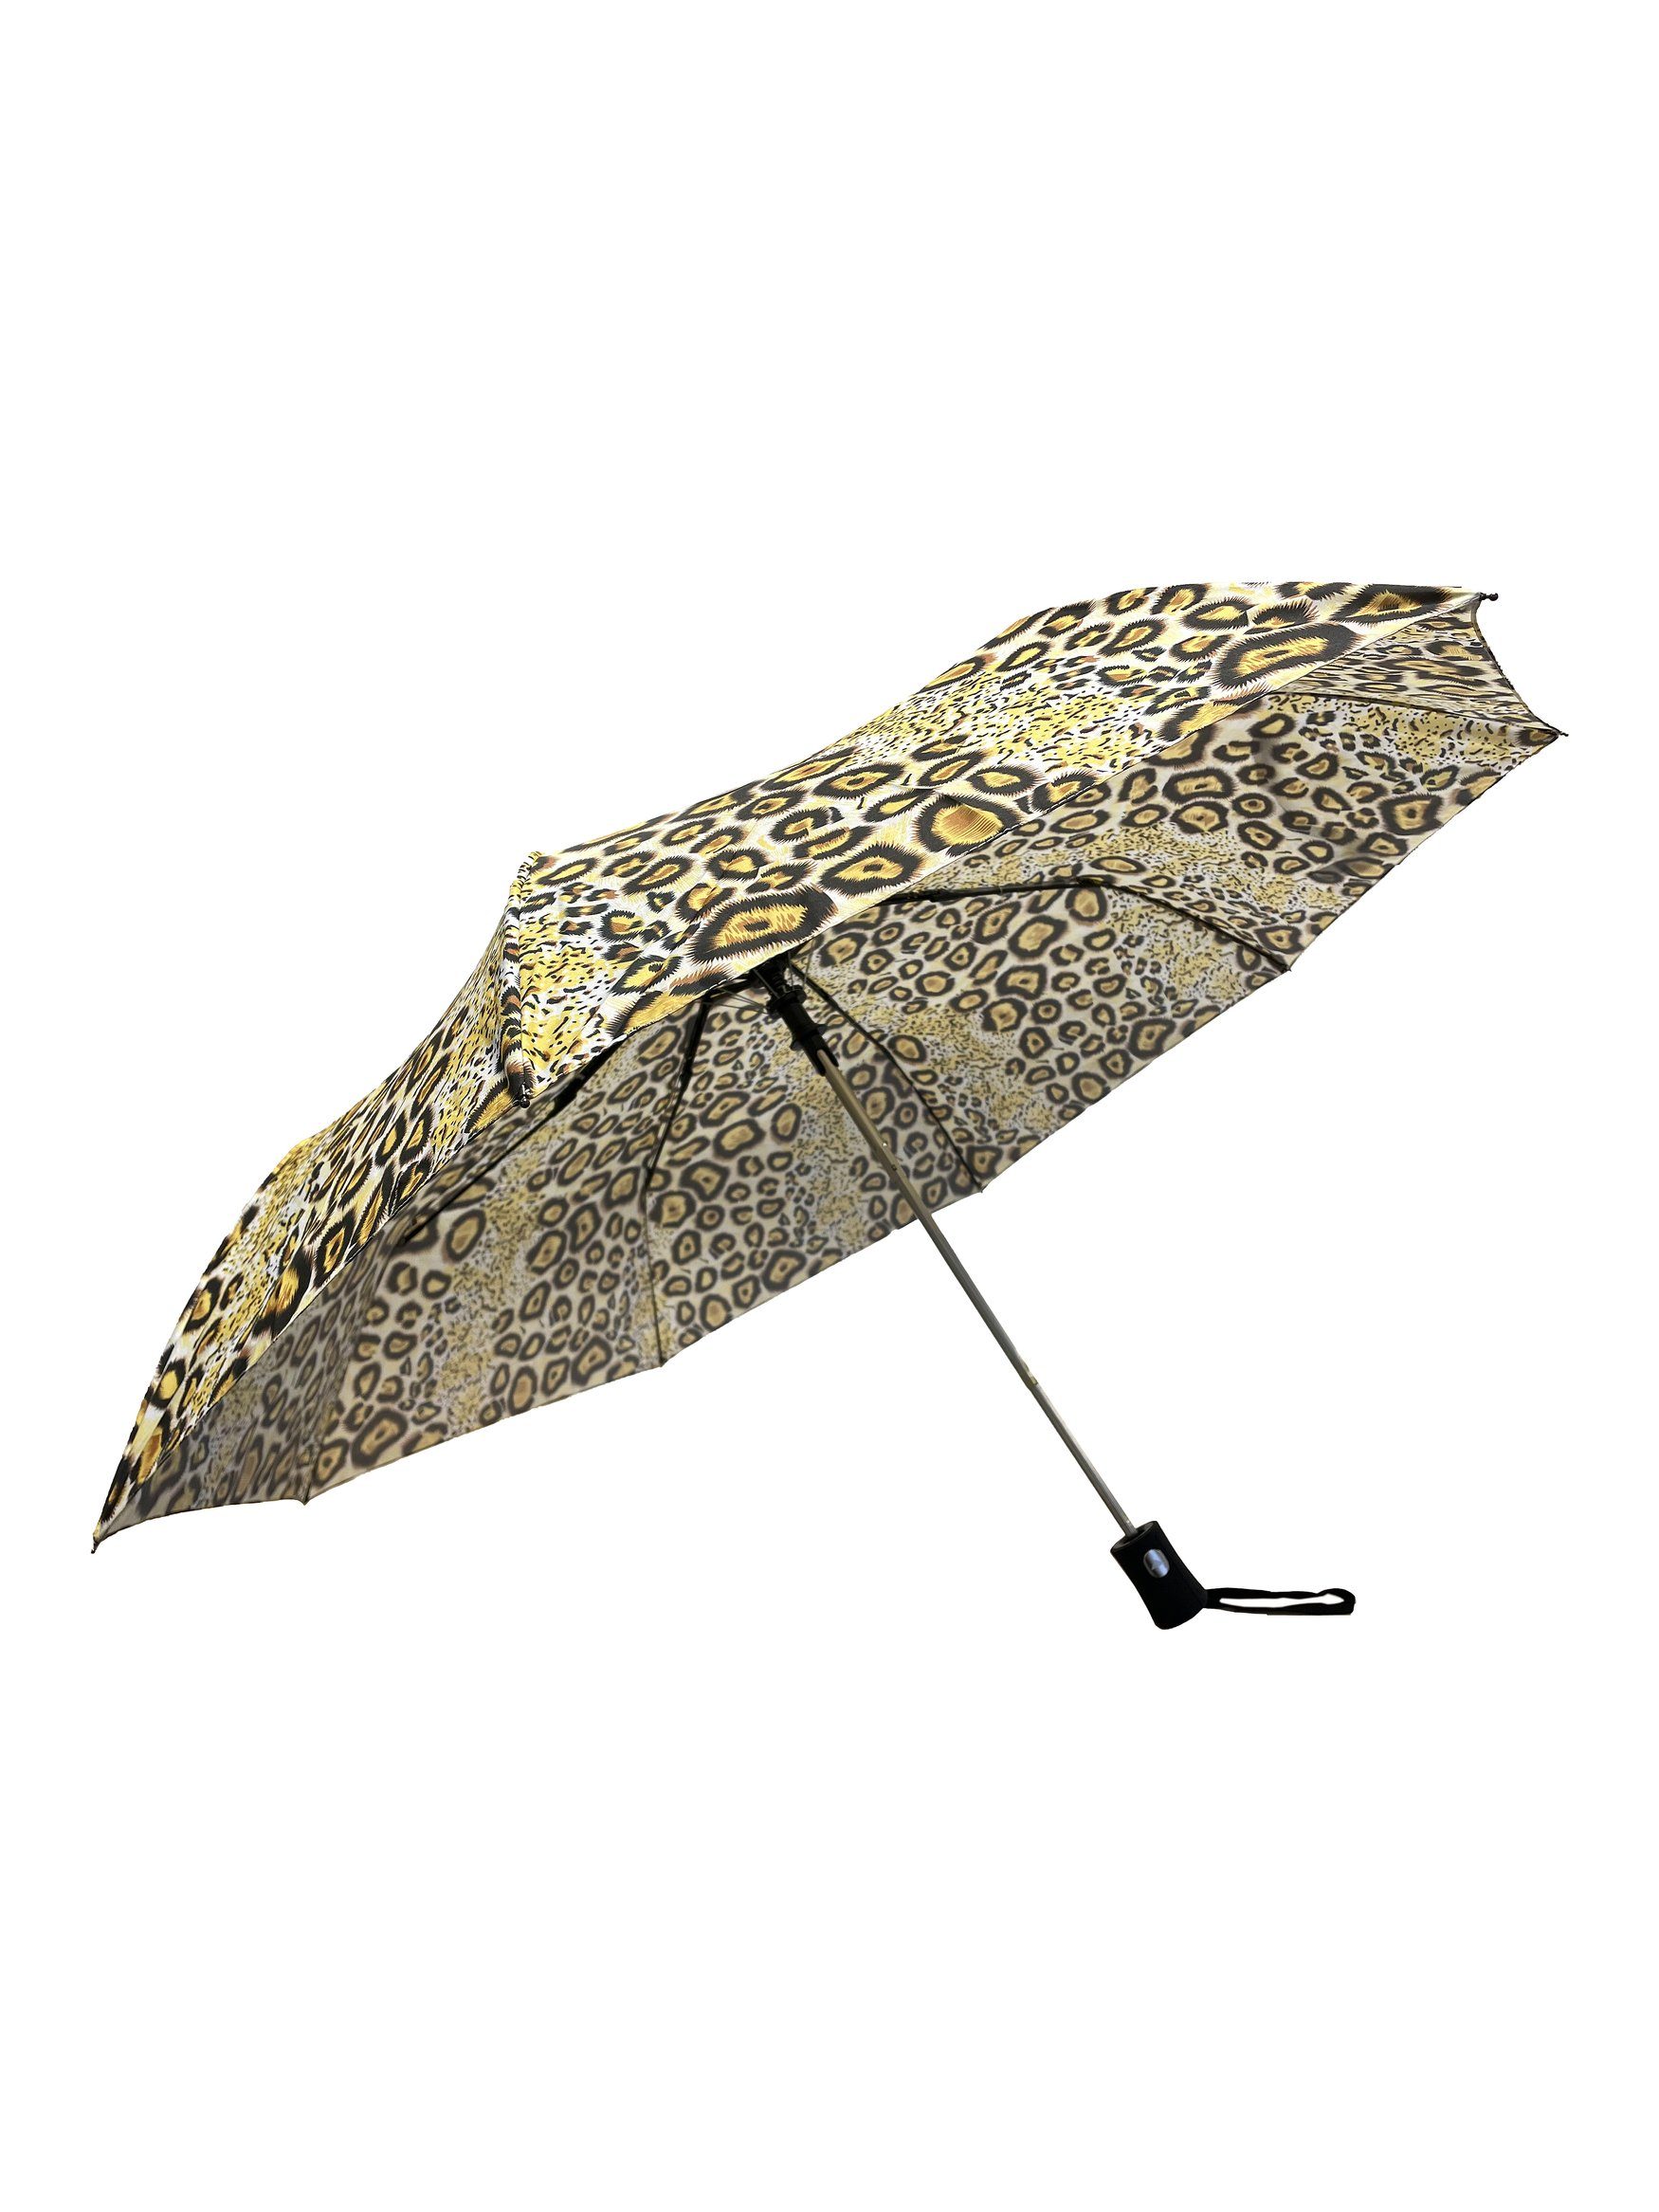 ANELY Taschenregenschirm Regenschirm Leopard Muster Kleiner Automatik Taschenschirm, 6747 in Gelb